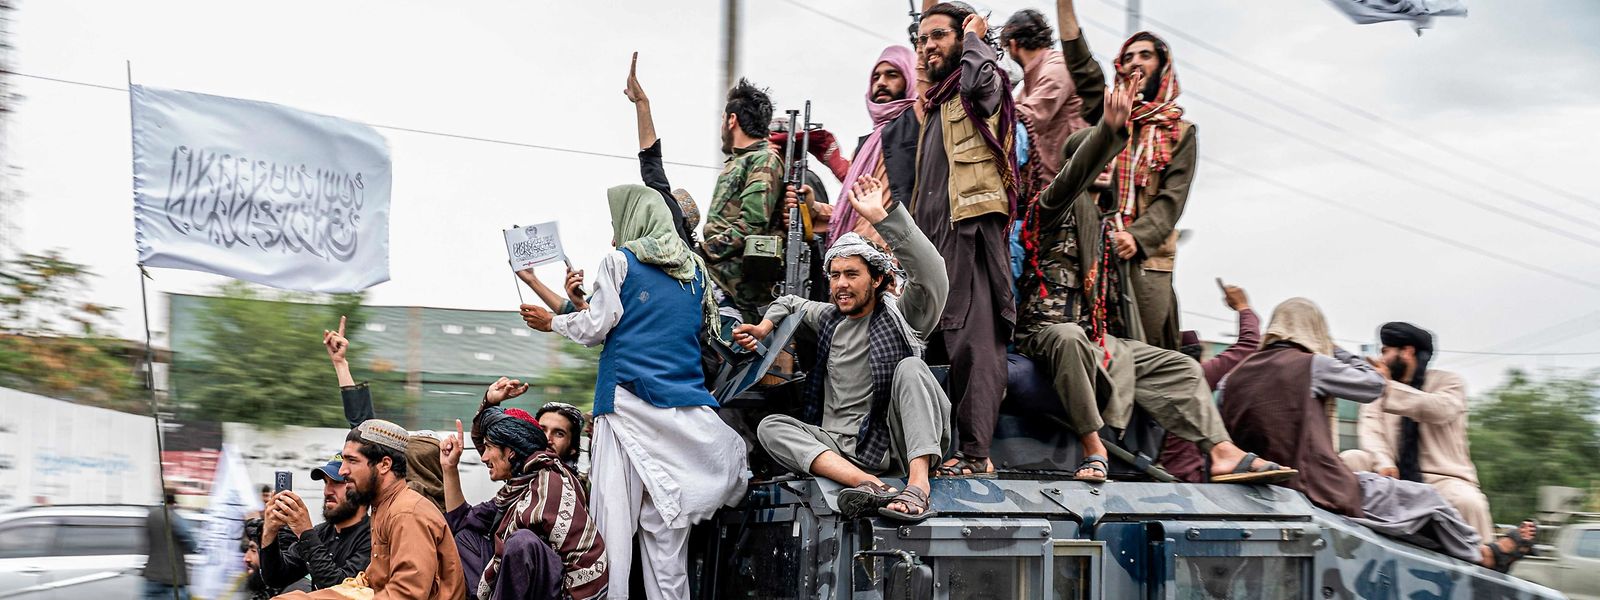 Combatentes talibãs cantaram slogans de vitória ao lado da embaixada dos EUA em Cabul a 15 de agosto de 2022, data que marca o primeiro aniversário de seu regresso ao poder no Afeganistão.